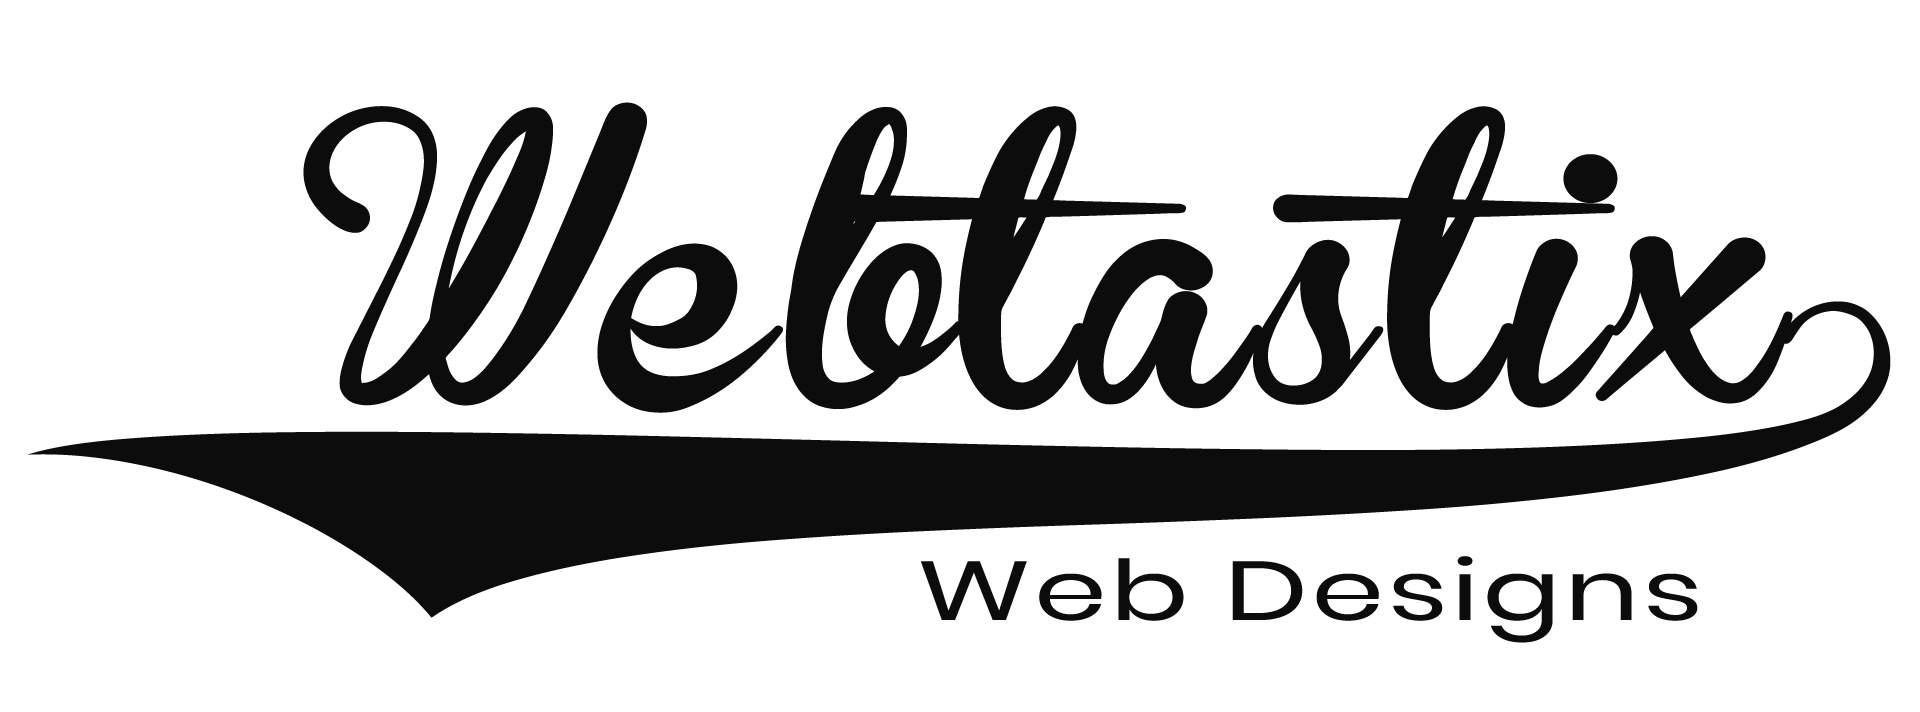 Webtastix Lenasia Web Design Agency